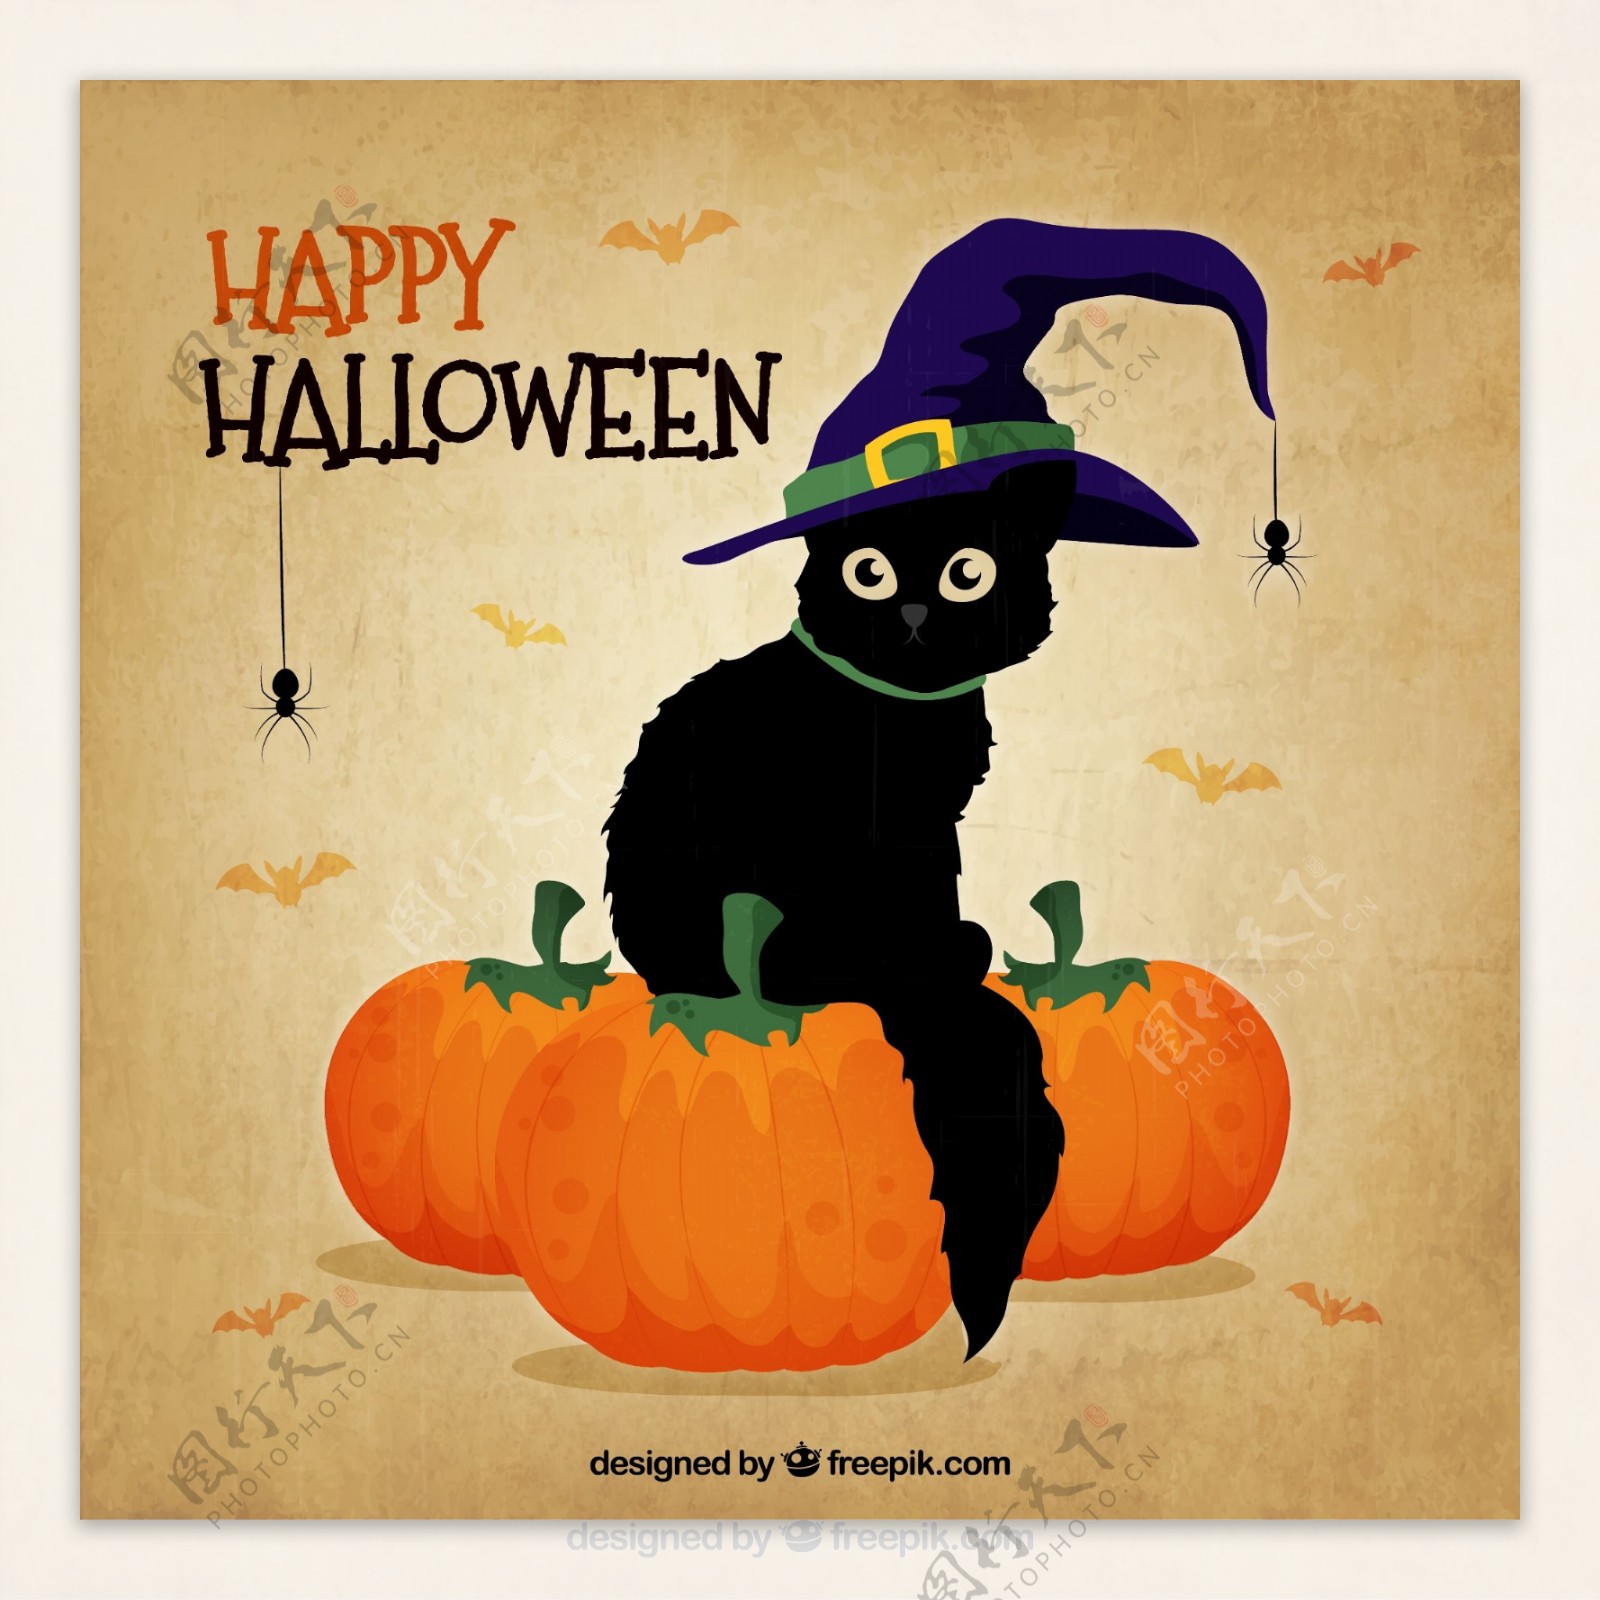 黑猫与女巫帽万圣节